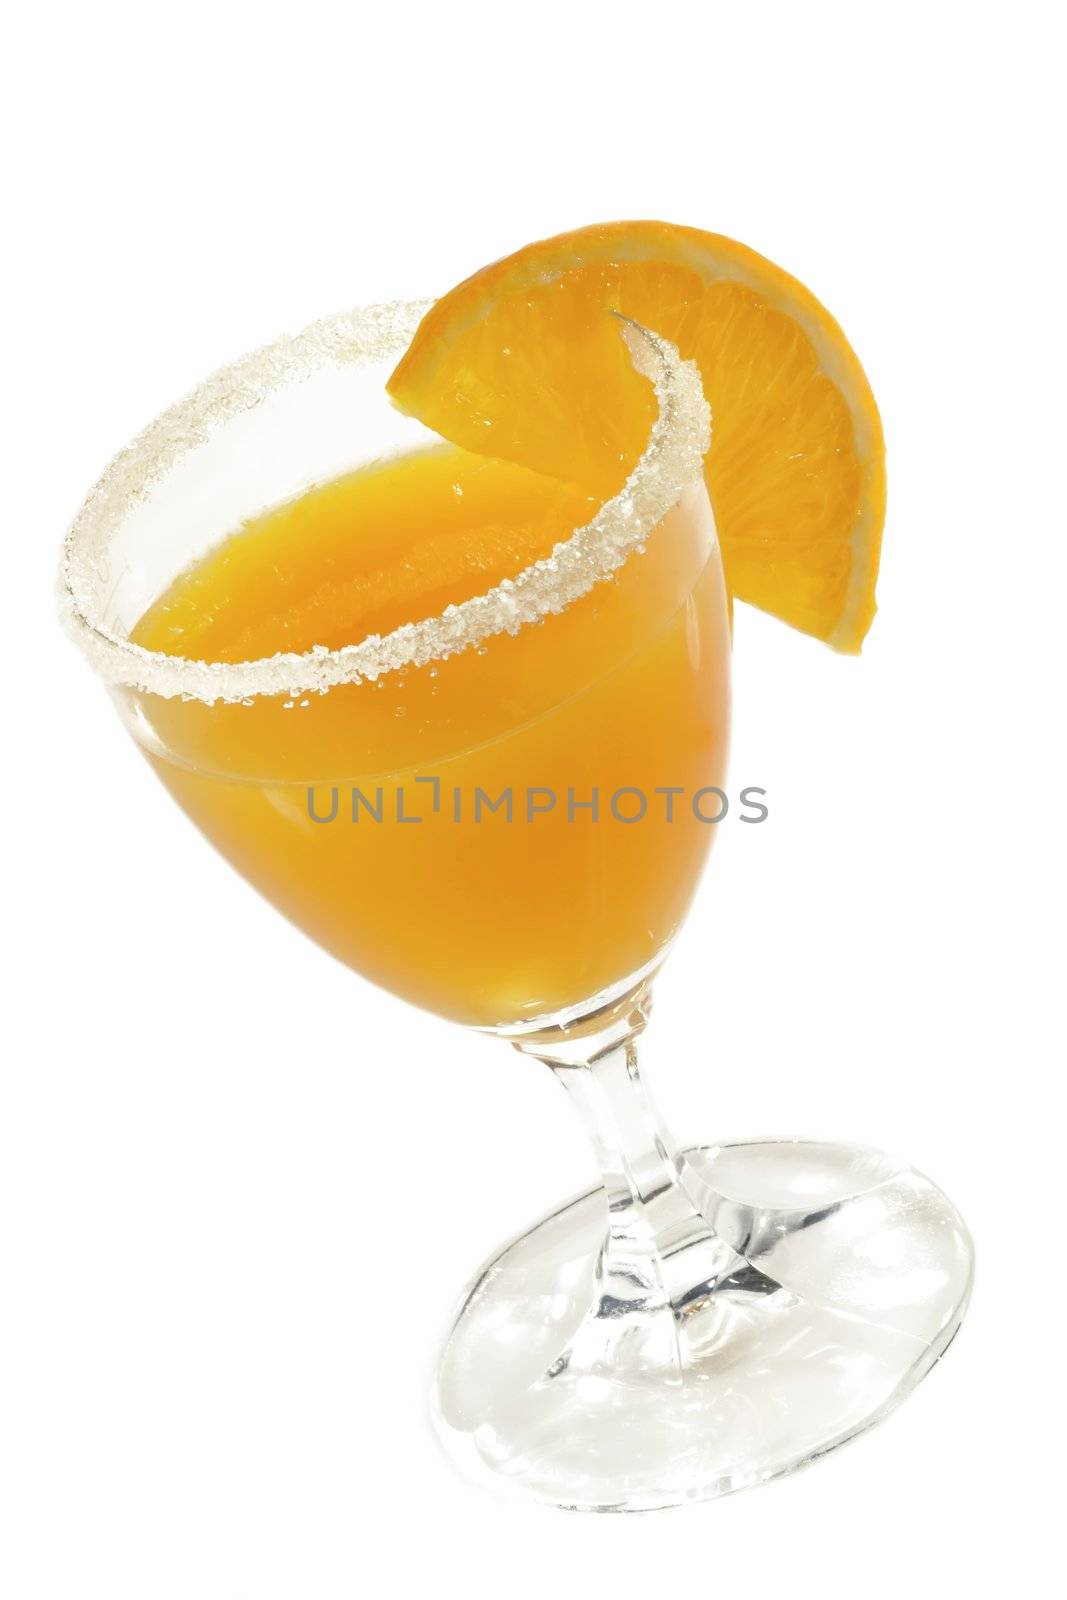 Fresh orange juice with orange slice